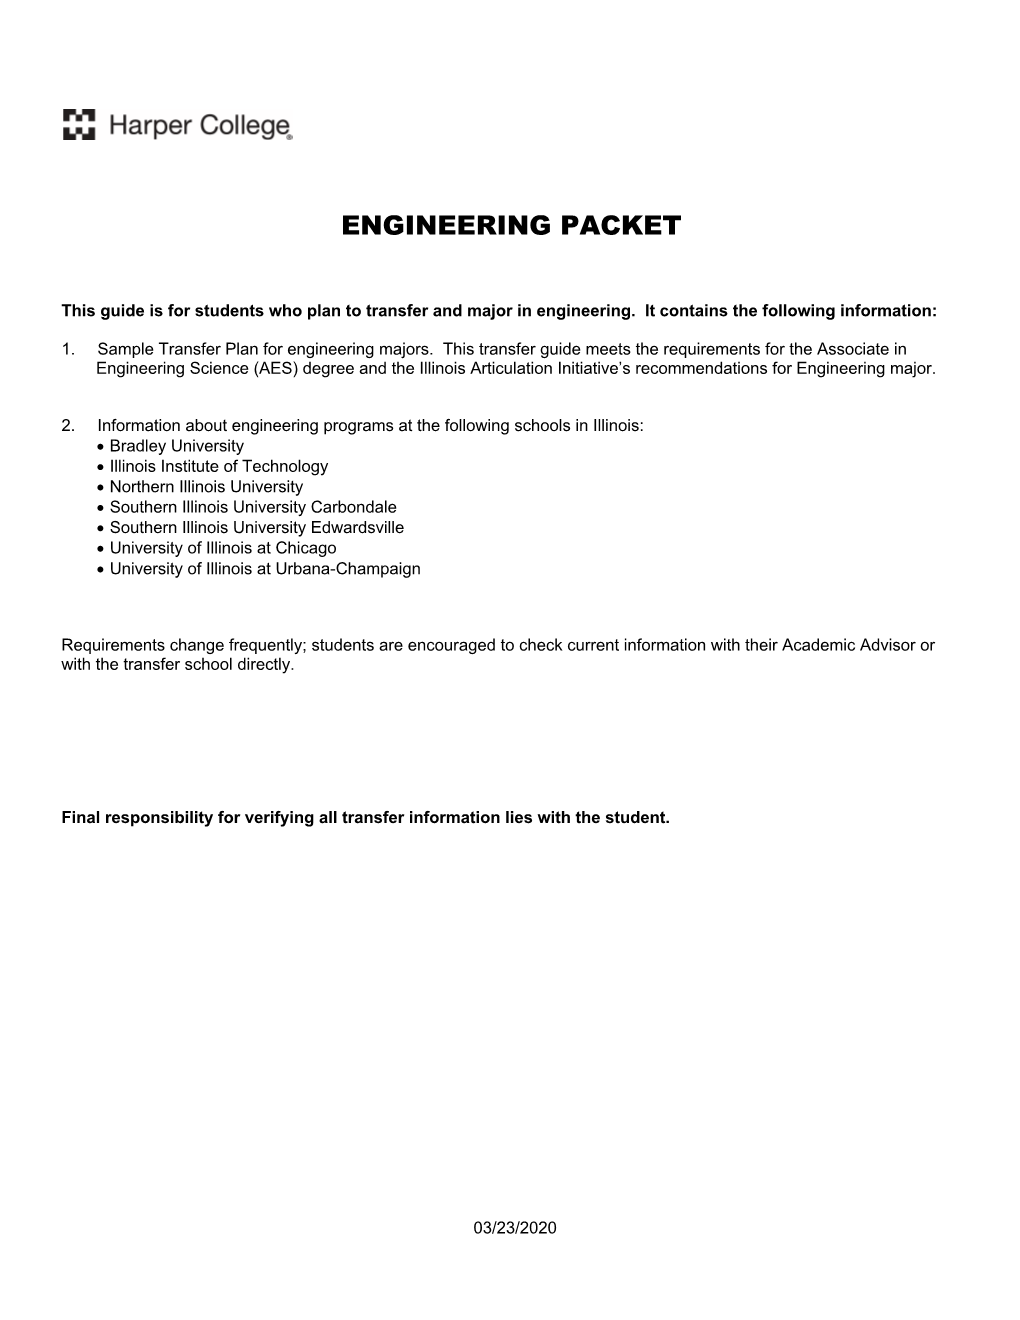 Engineering Packet